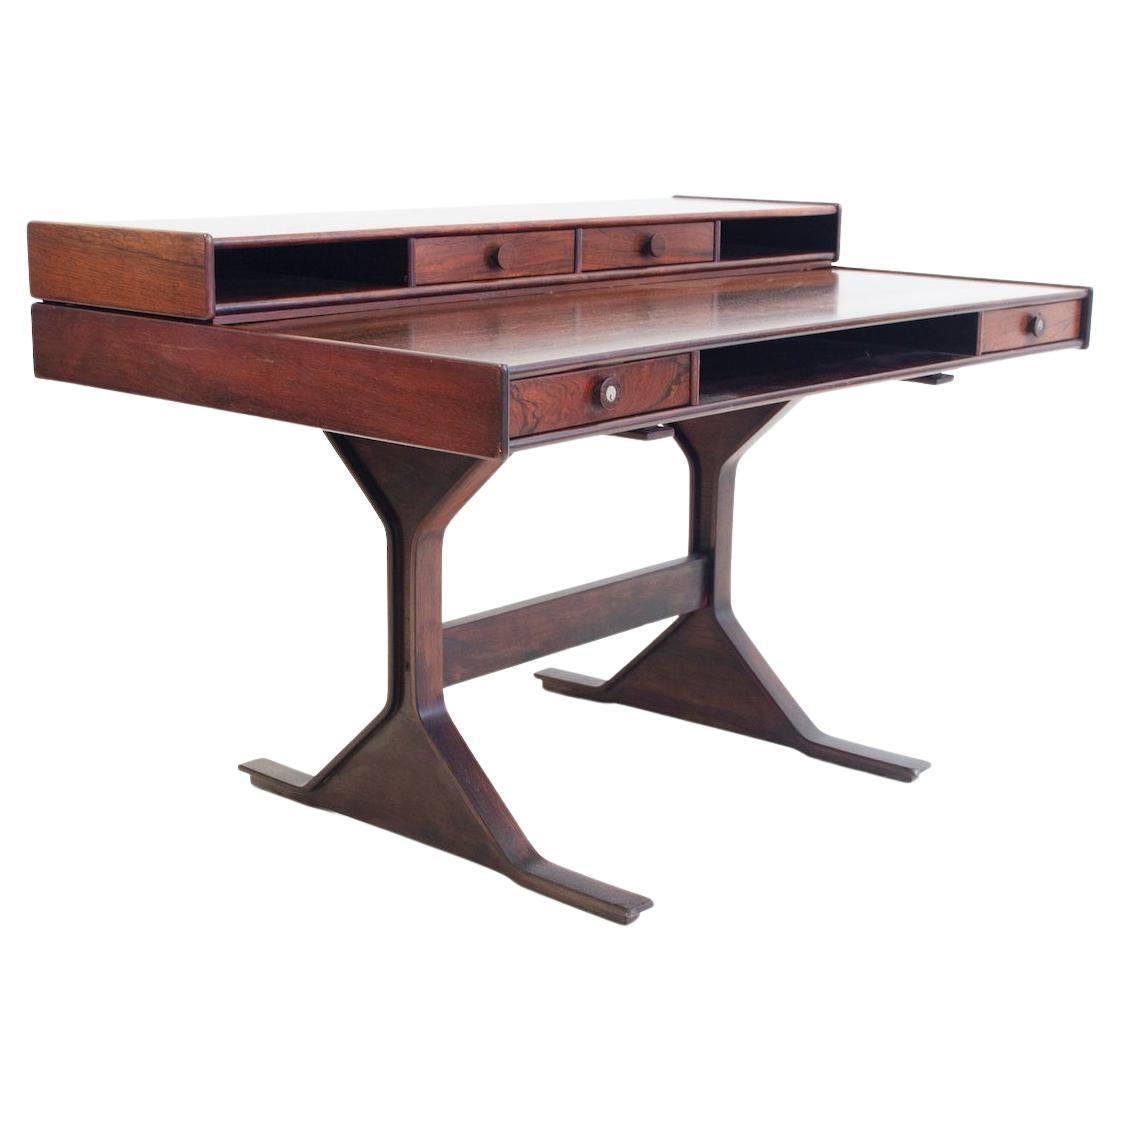 Midcentury Modern Wooden Desk by Gianfranco Frattini for Bernini